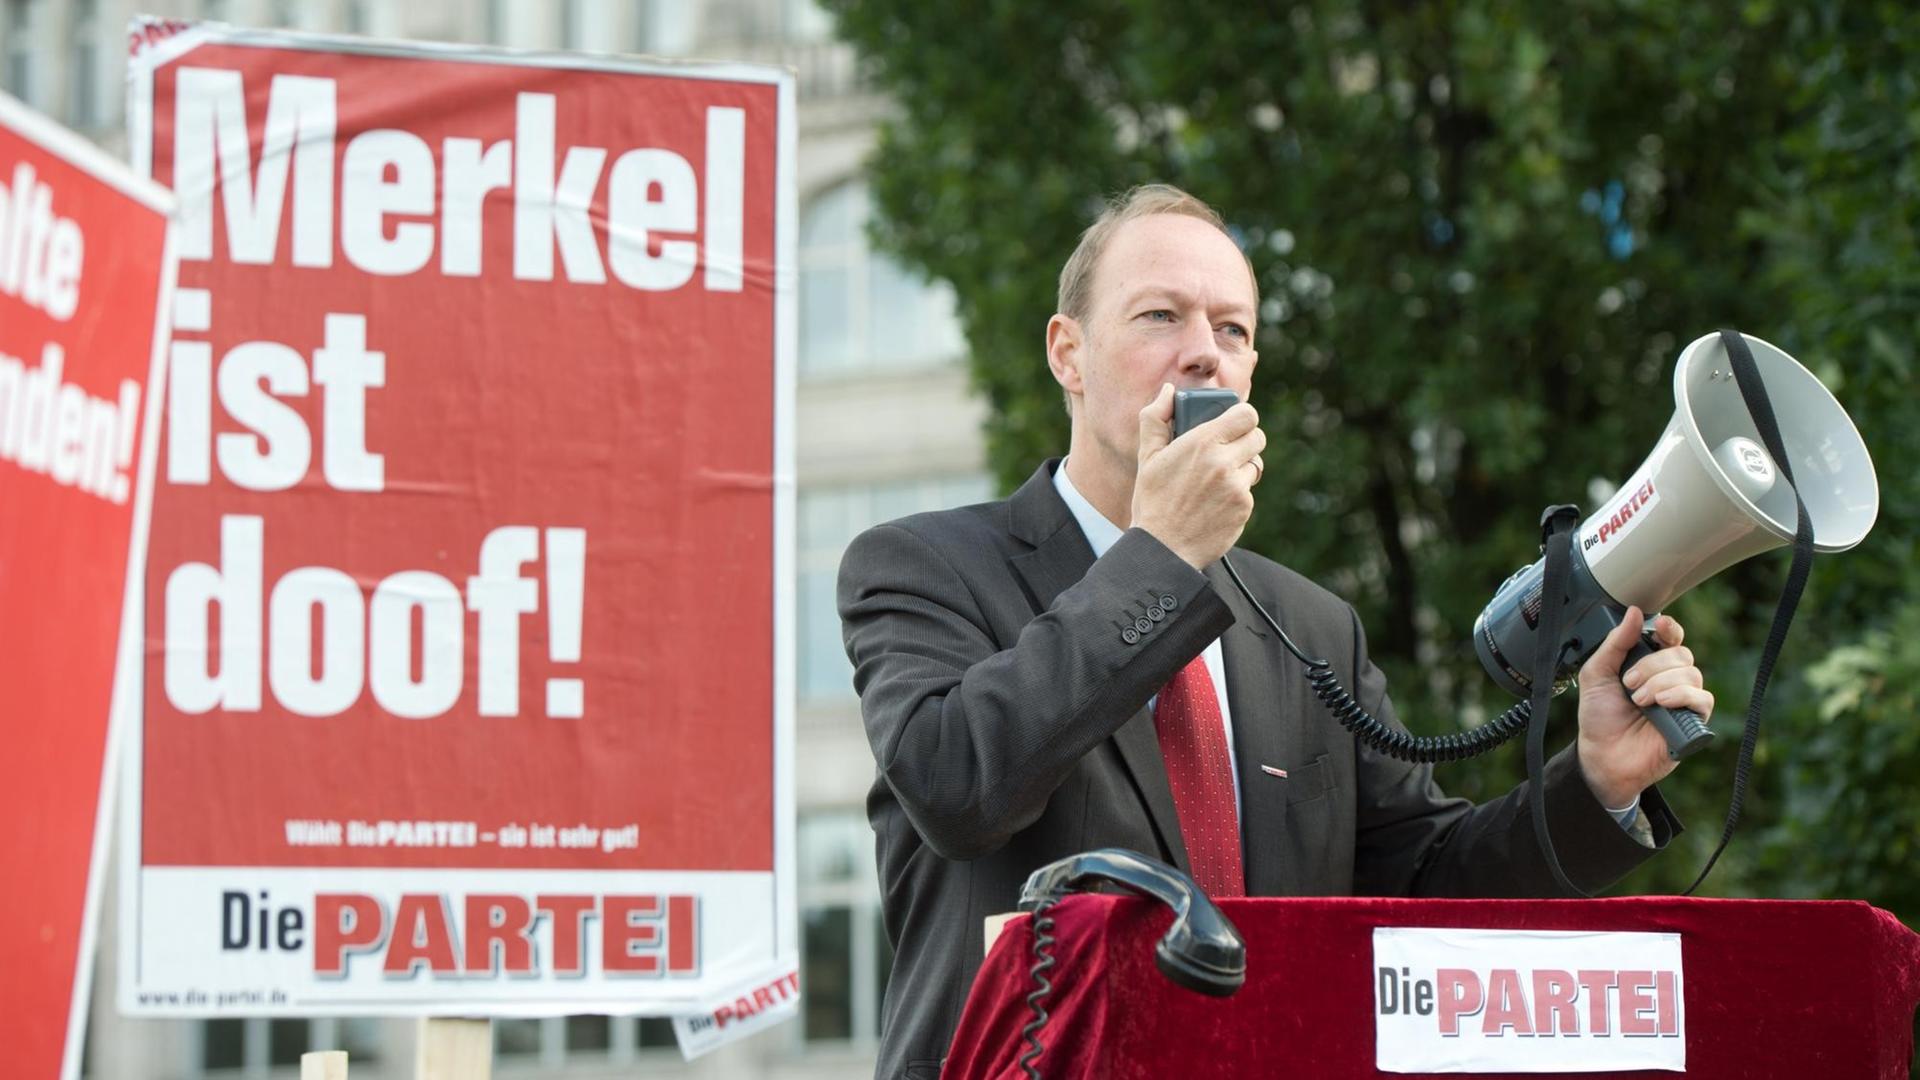 Martin Sonneborn spricht durch ein Megaphon, neben ihm ein Wahlplakat mit dem Slogan "Merkel ist doof!"